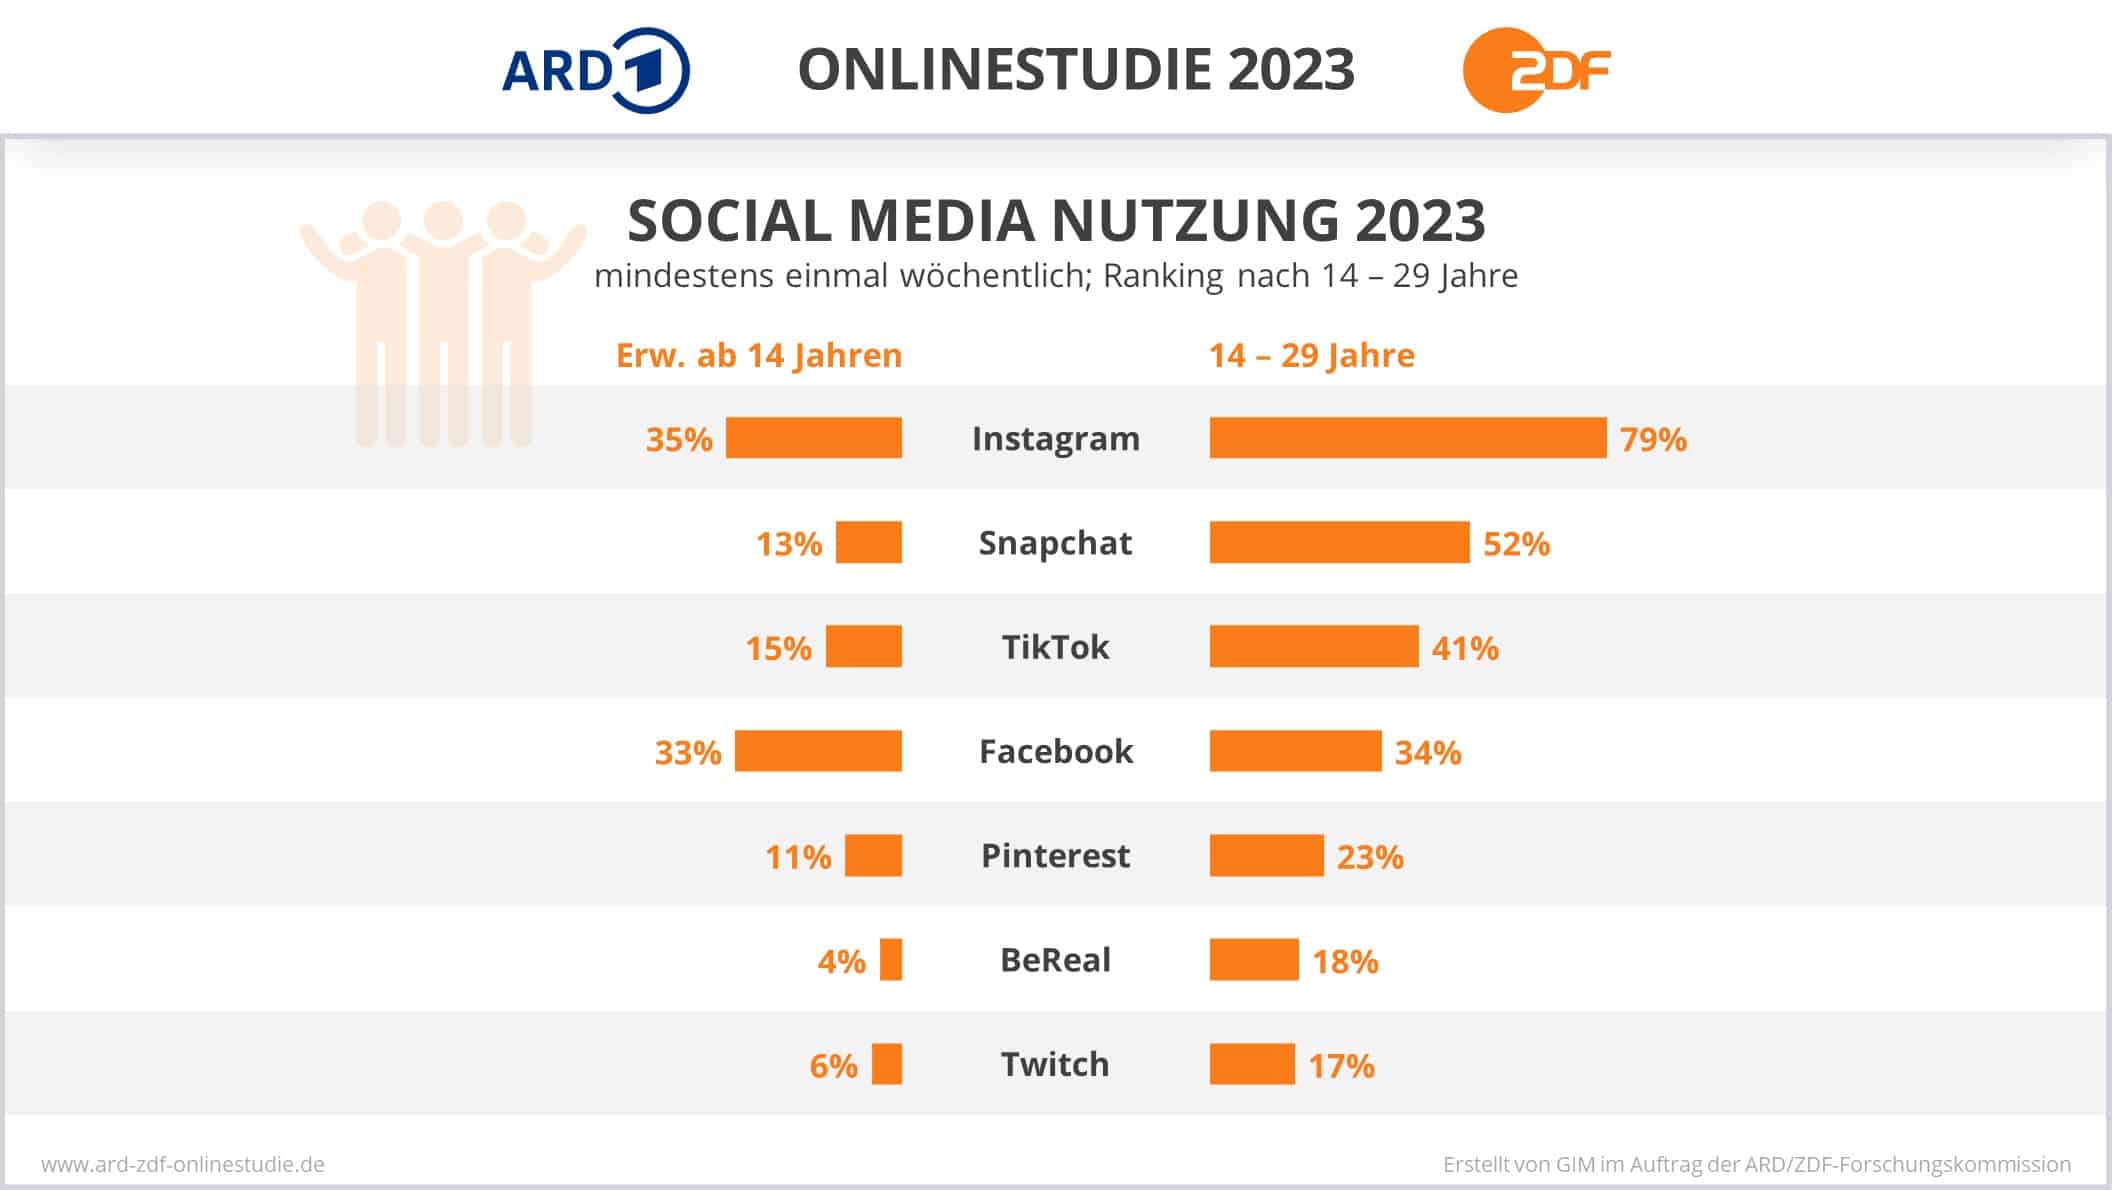 ARD/ZDF-Onlinestudie 2023 mit den Ergebnissen zur Social Media Nutzung in Deutschland.